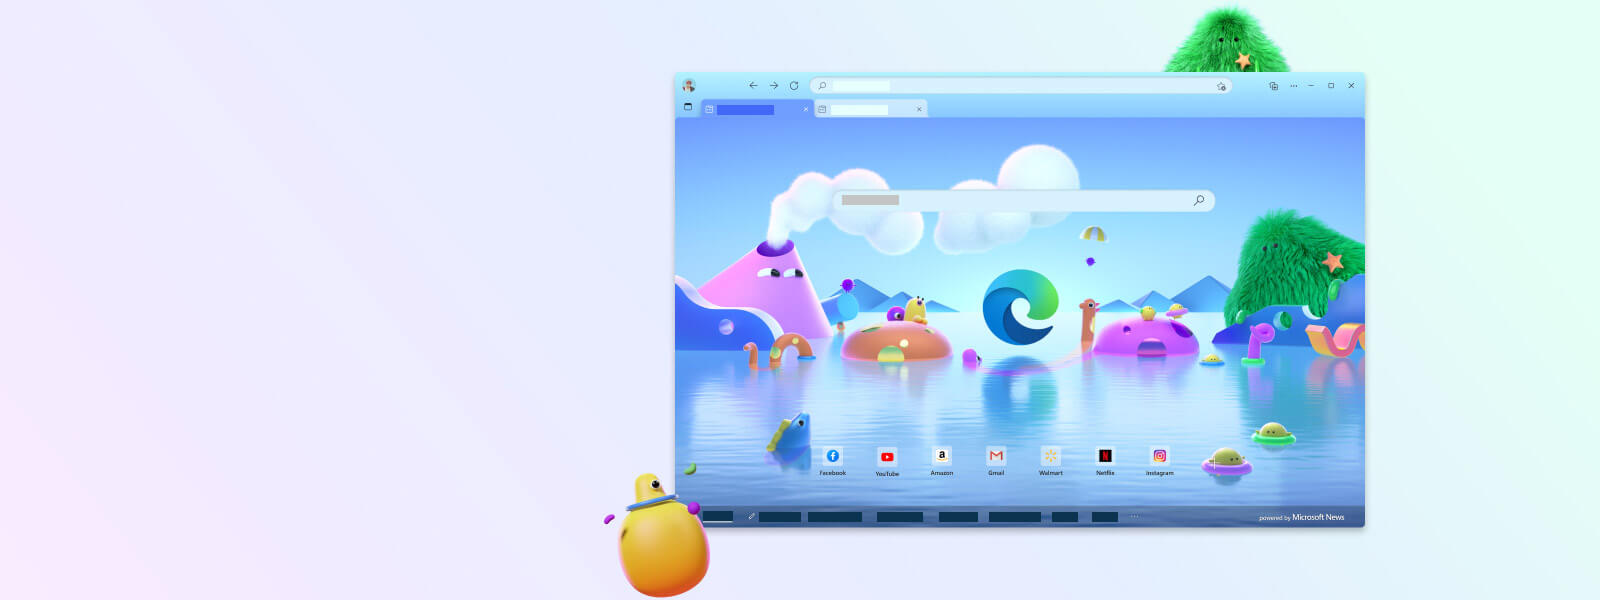 Pantalla del navegador de Microsoft Edge con distintos personajes de dibujos animados para el Modo infantil